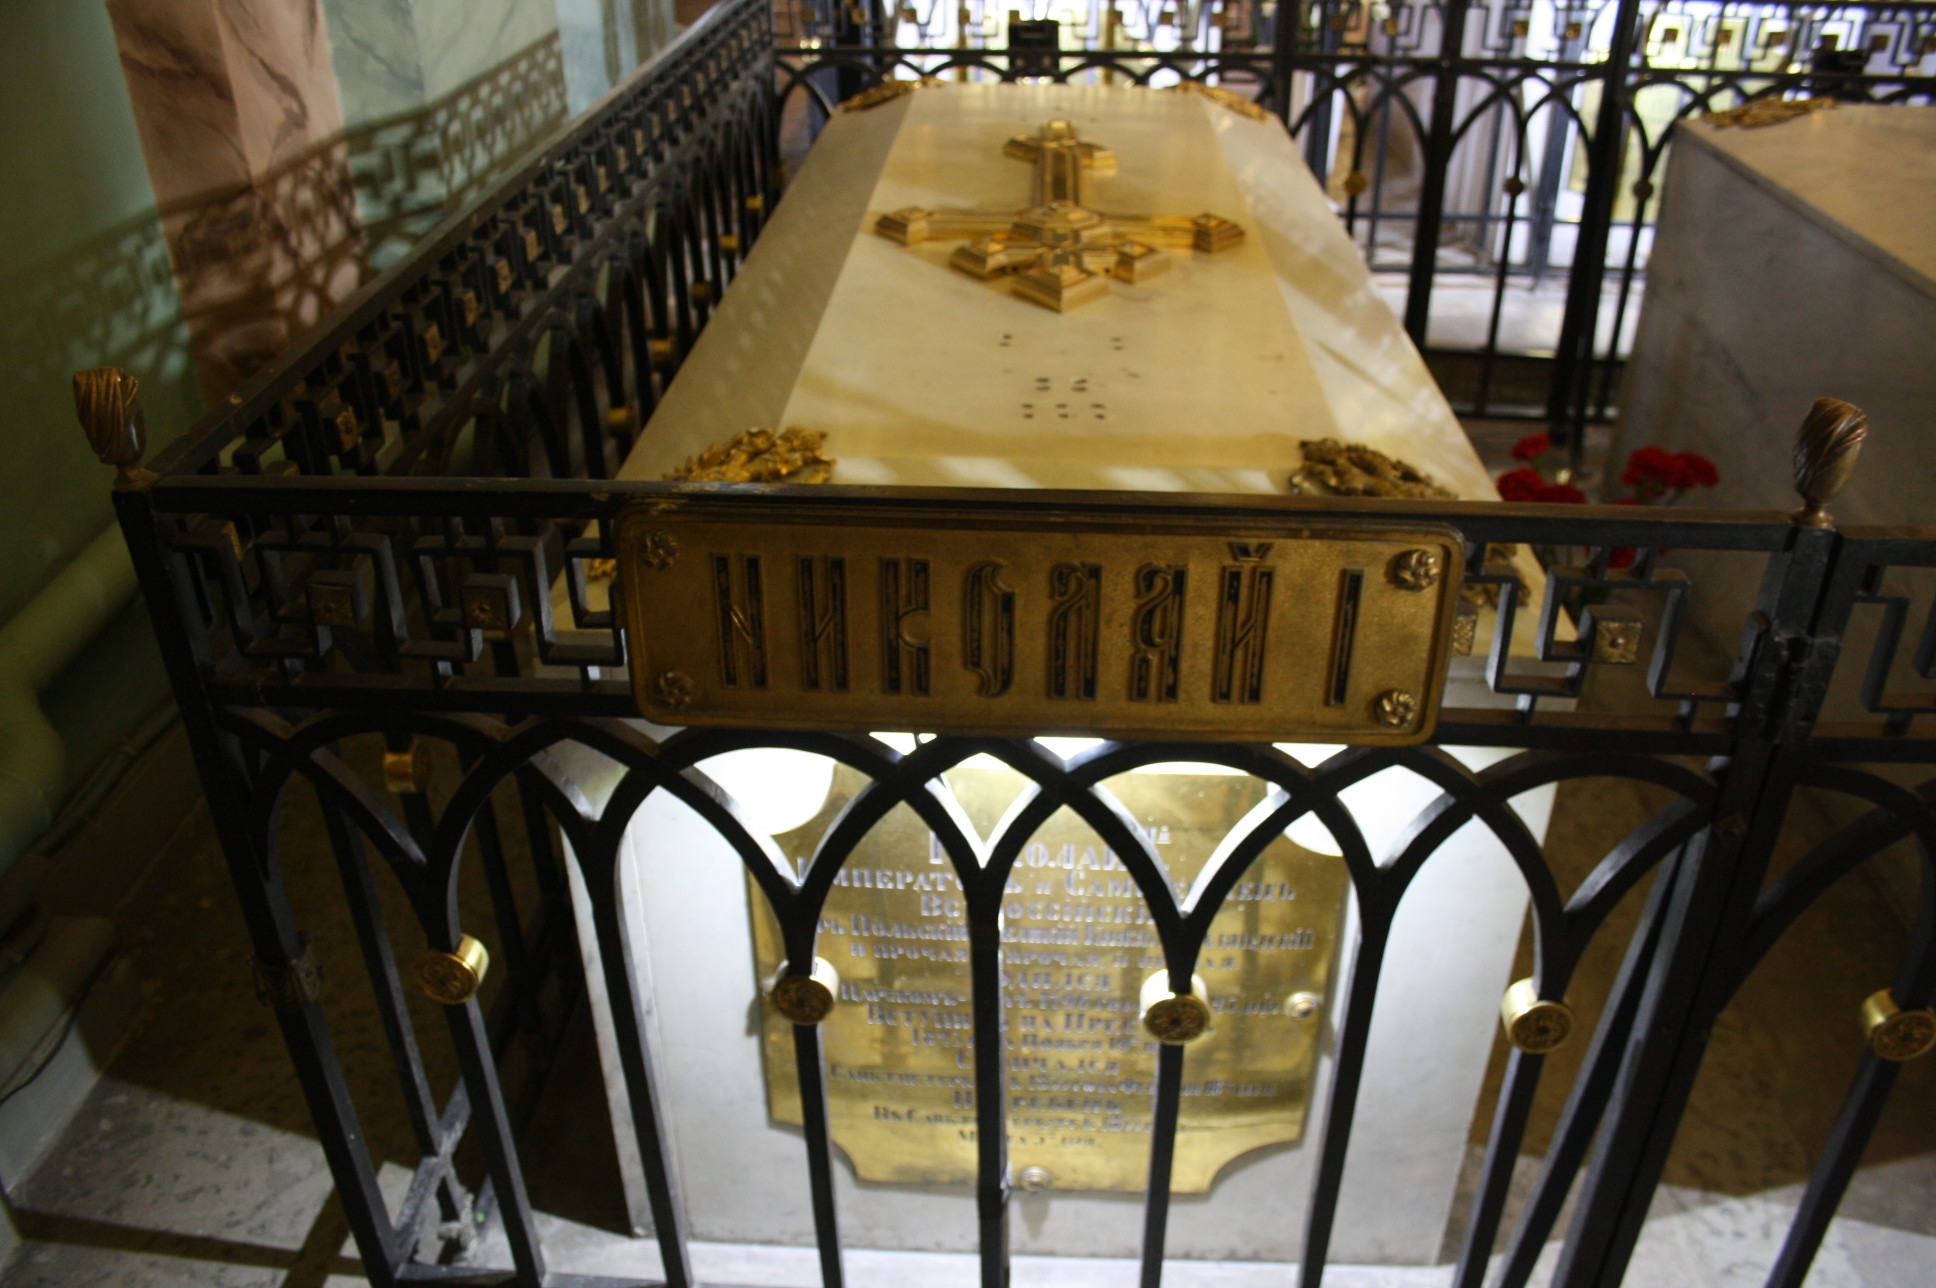 Кто похоронен в петропавловской